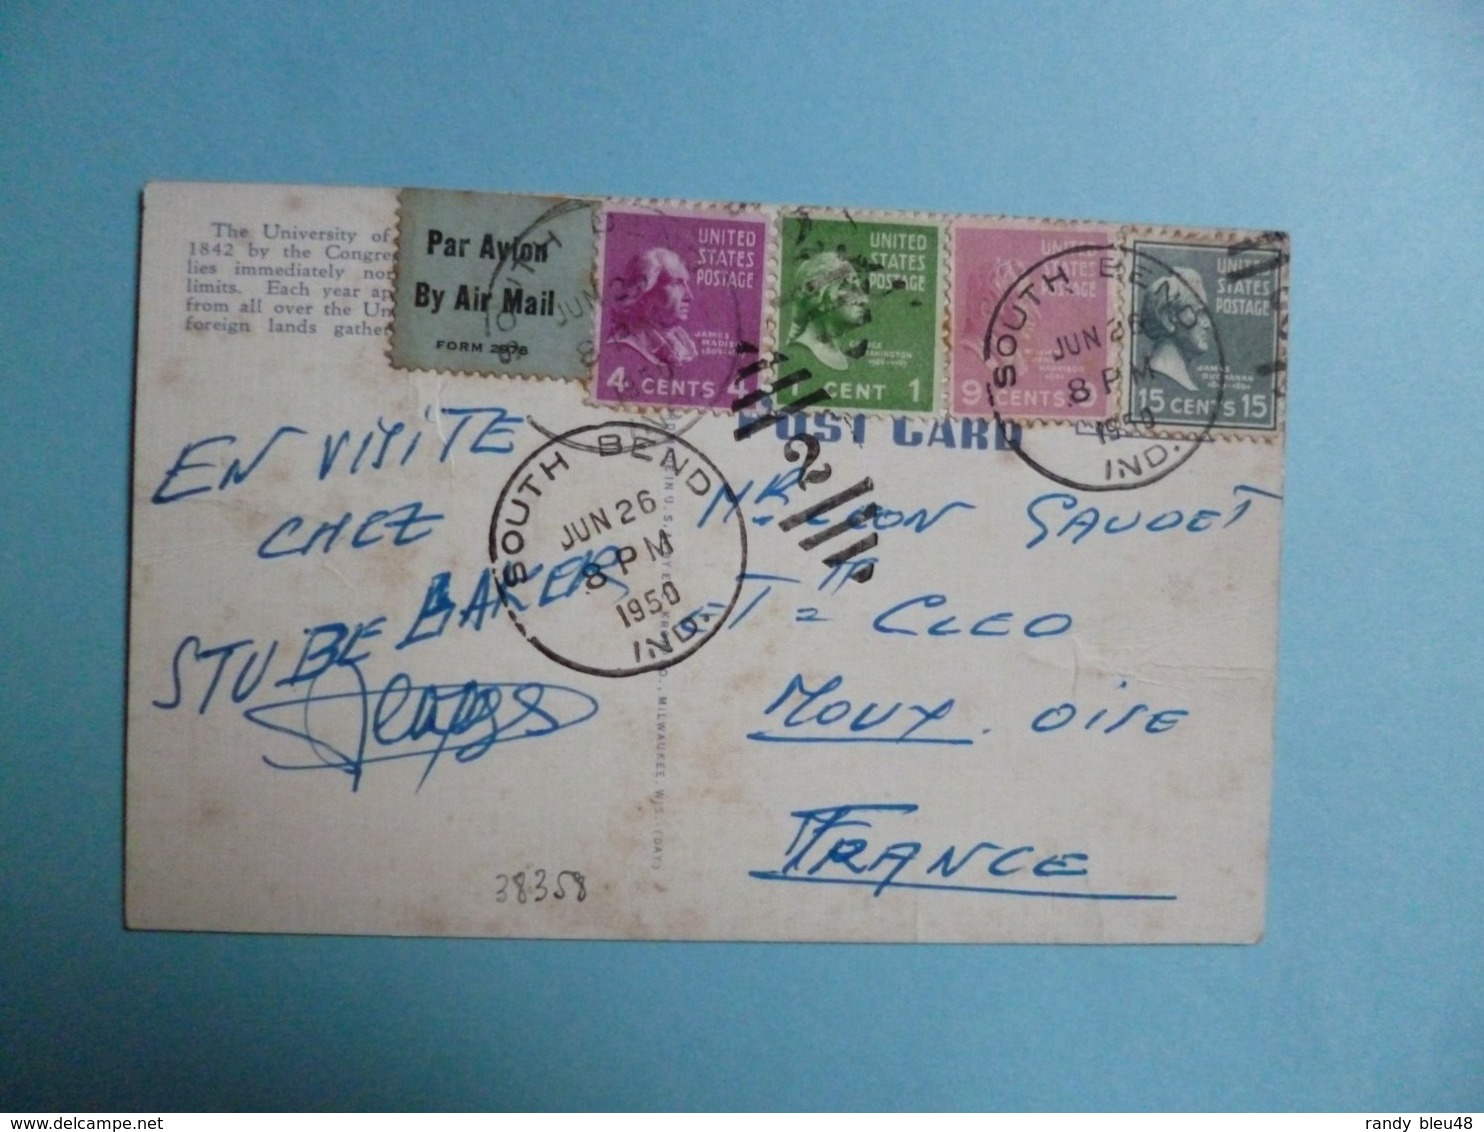 Oblitération Timbres Etats Unis Sur Carte Postale + Vignette Par Avion  -  1950  -  United States Postage - Storia Postale